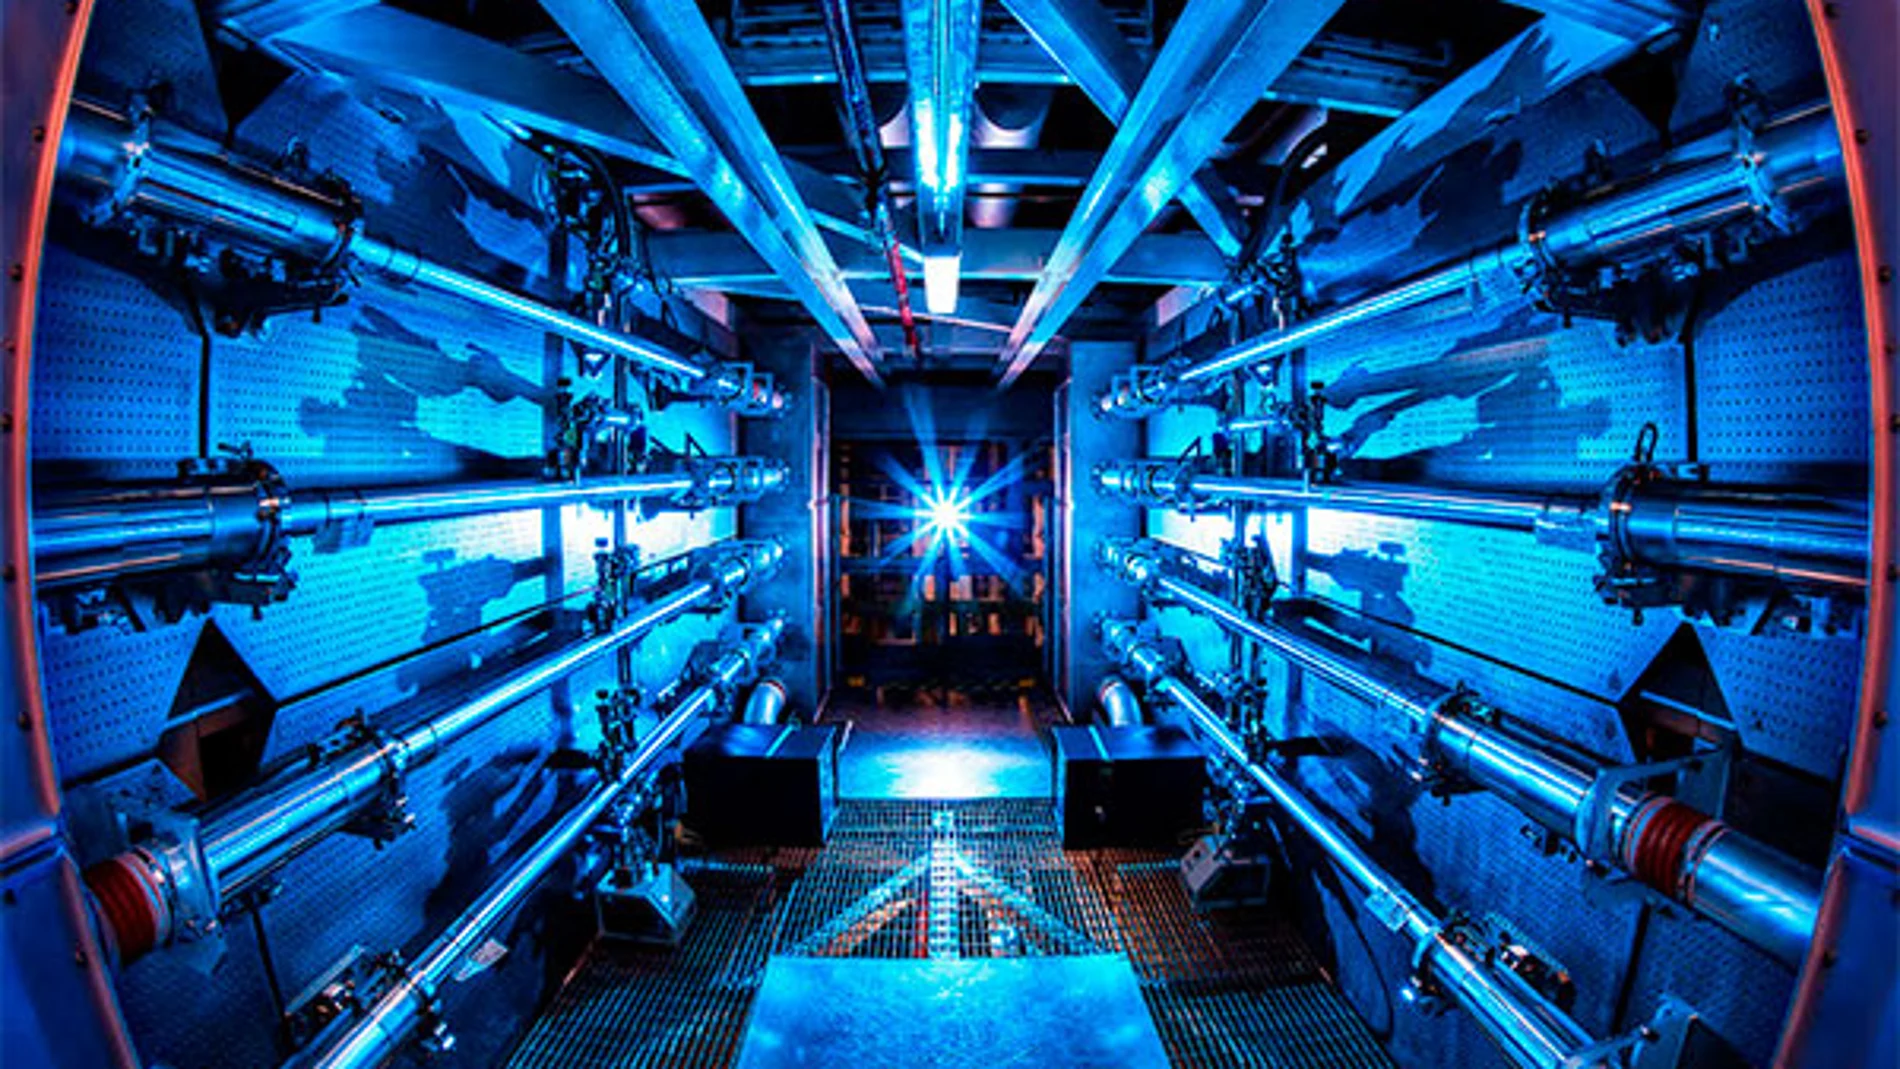 Los 192 rayos láser recorren 1.500 metros de tuberías hasta llegar a la cámara de fusión.